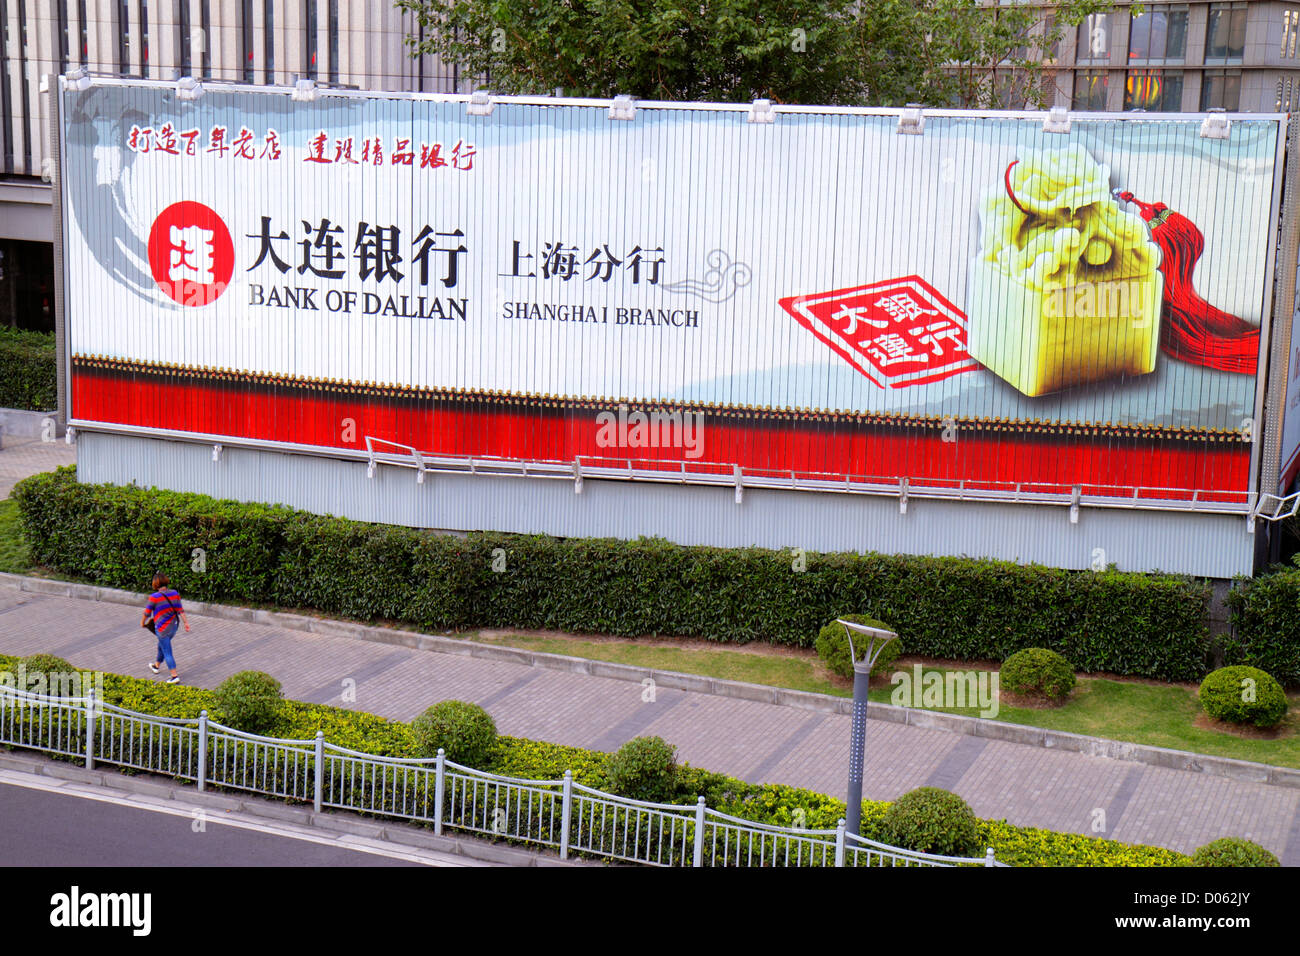 Shanghai Cina,Cinese Pudong Lujiazui Financial District,Lujiazui East Road,cartellone elettronico,pubblicità,annuncio,segno,pubblicità,annuncio,pubblicità,pubblicità,pubblicità,a Foto Stock